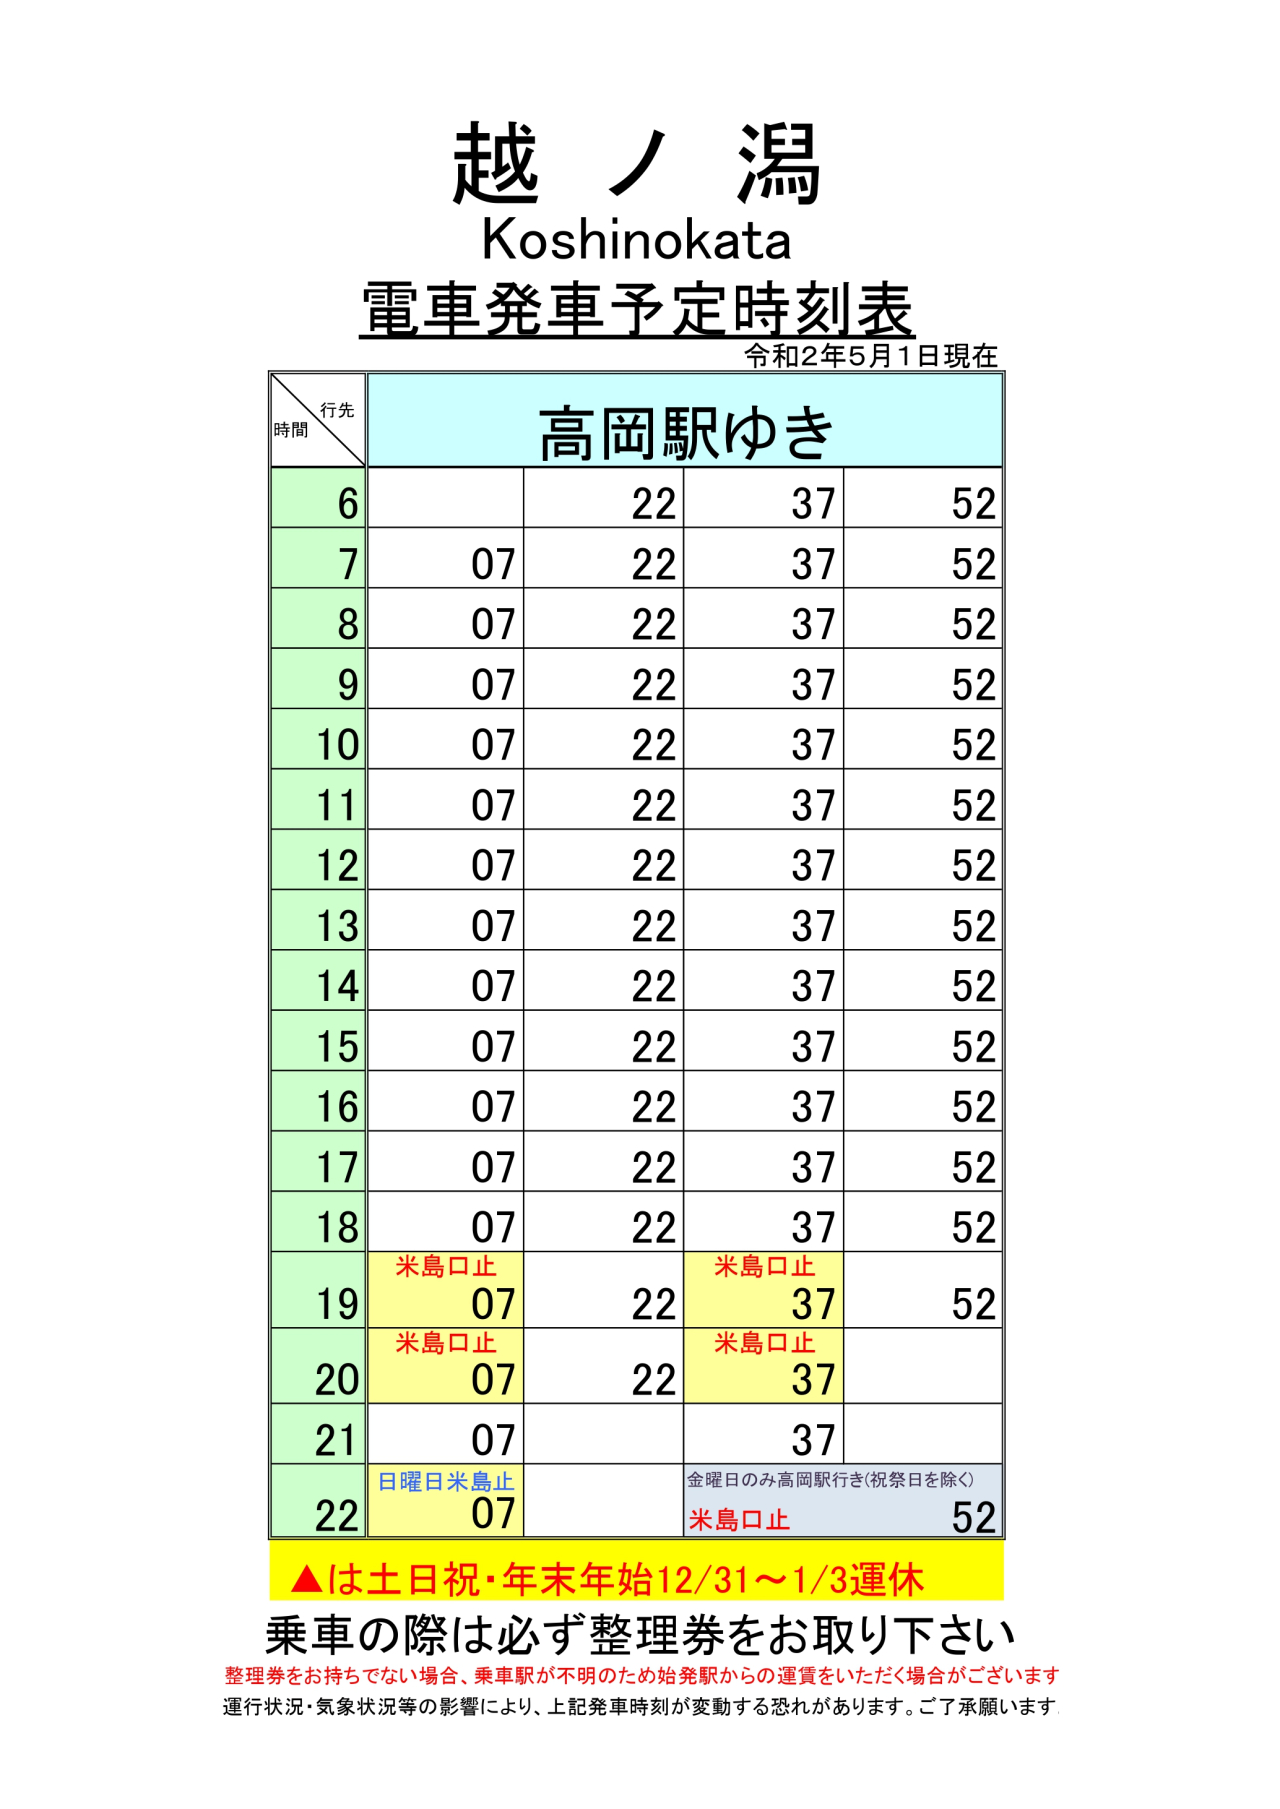 最新2.5.1改正各駅時刻表(全駅)_page-0001